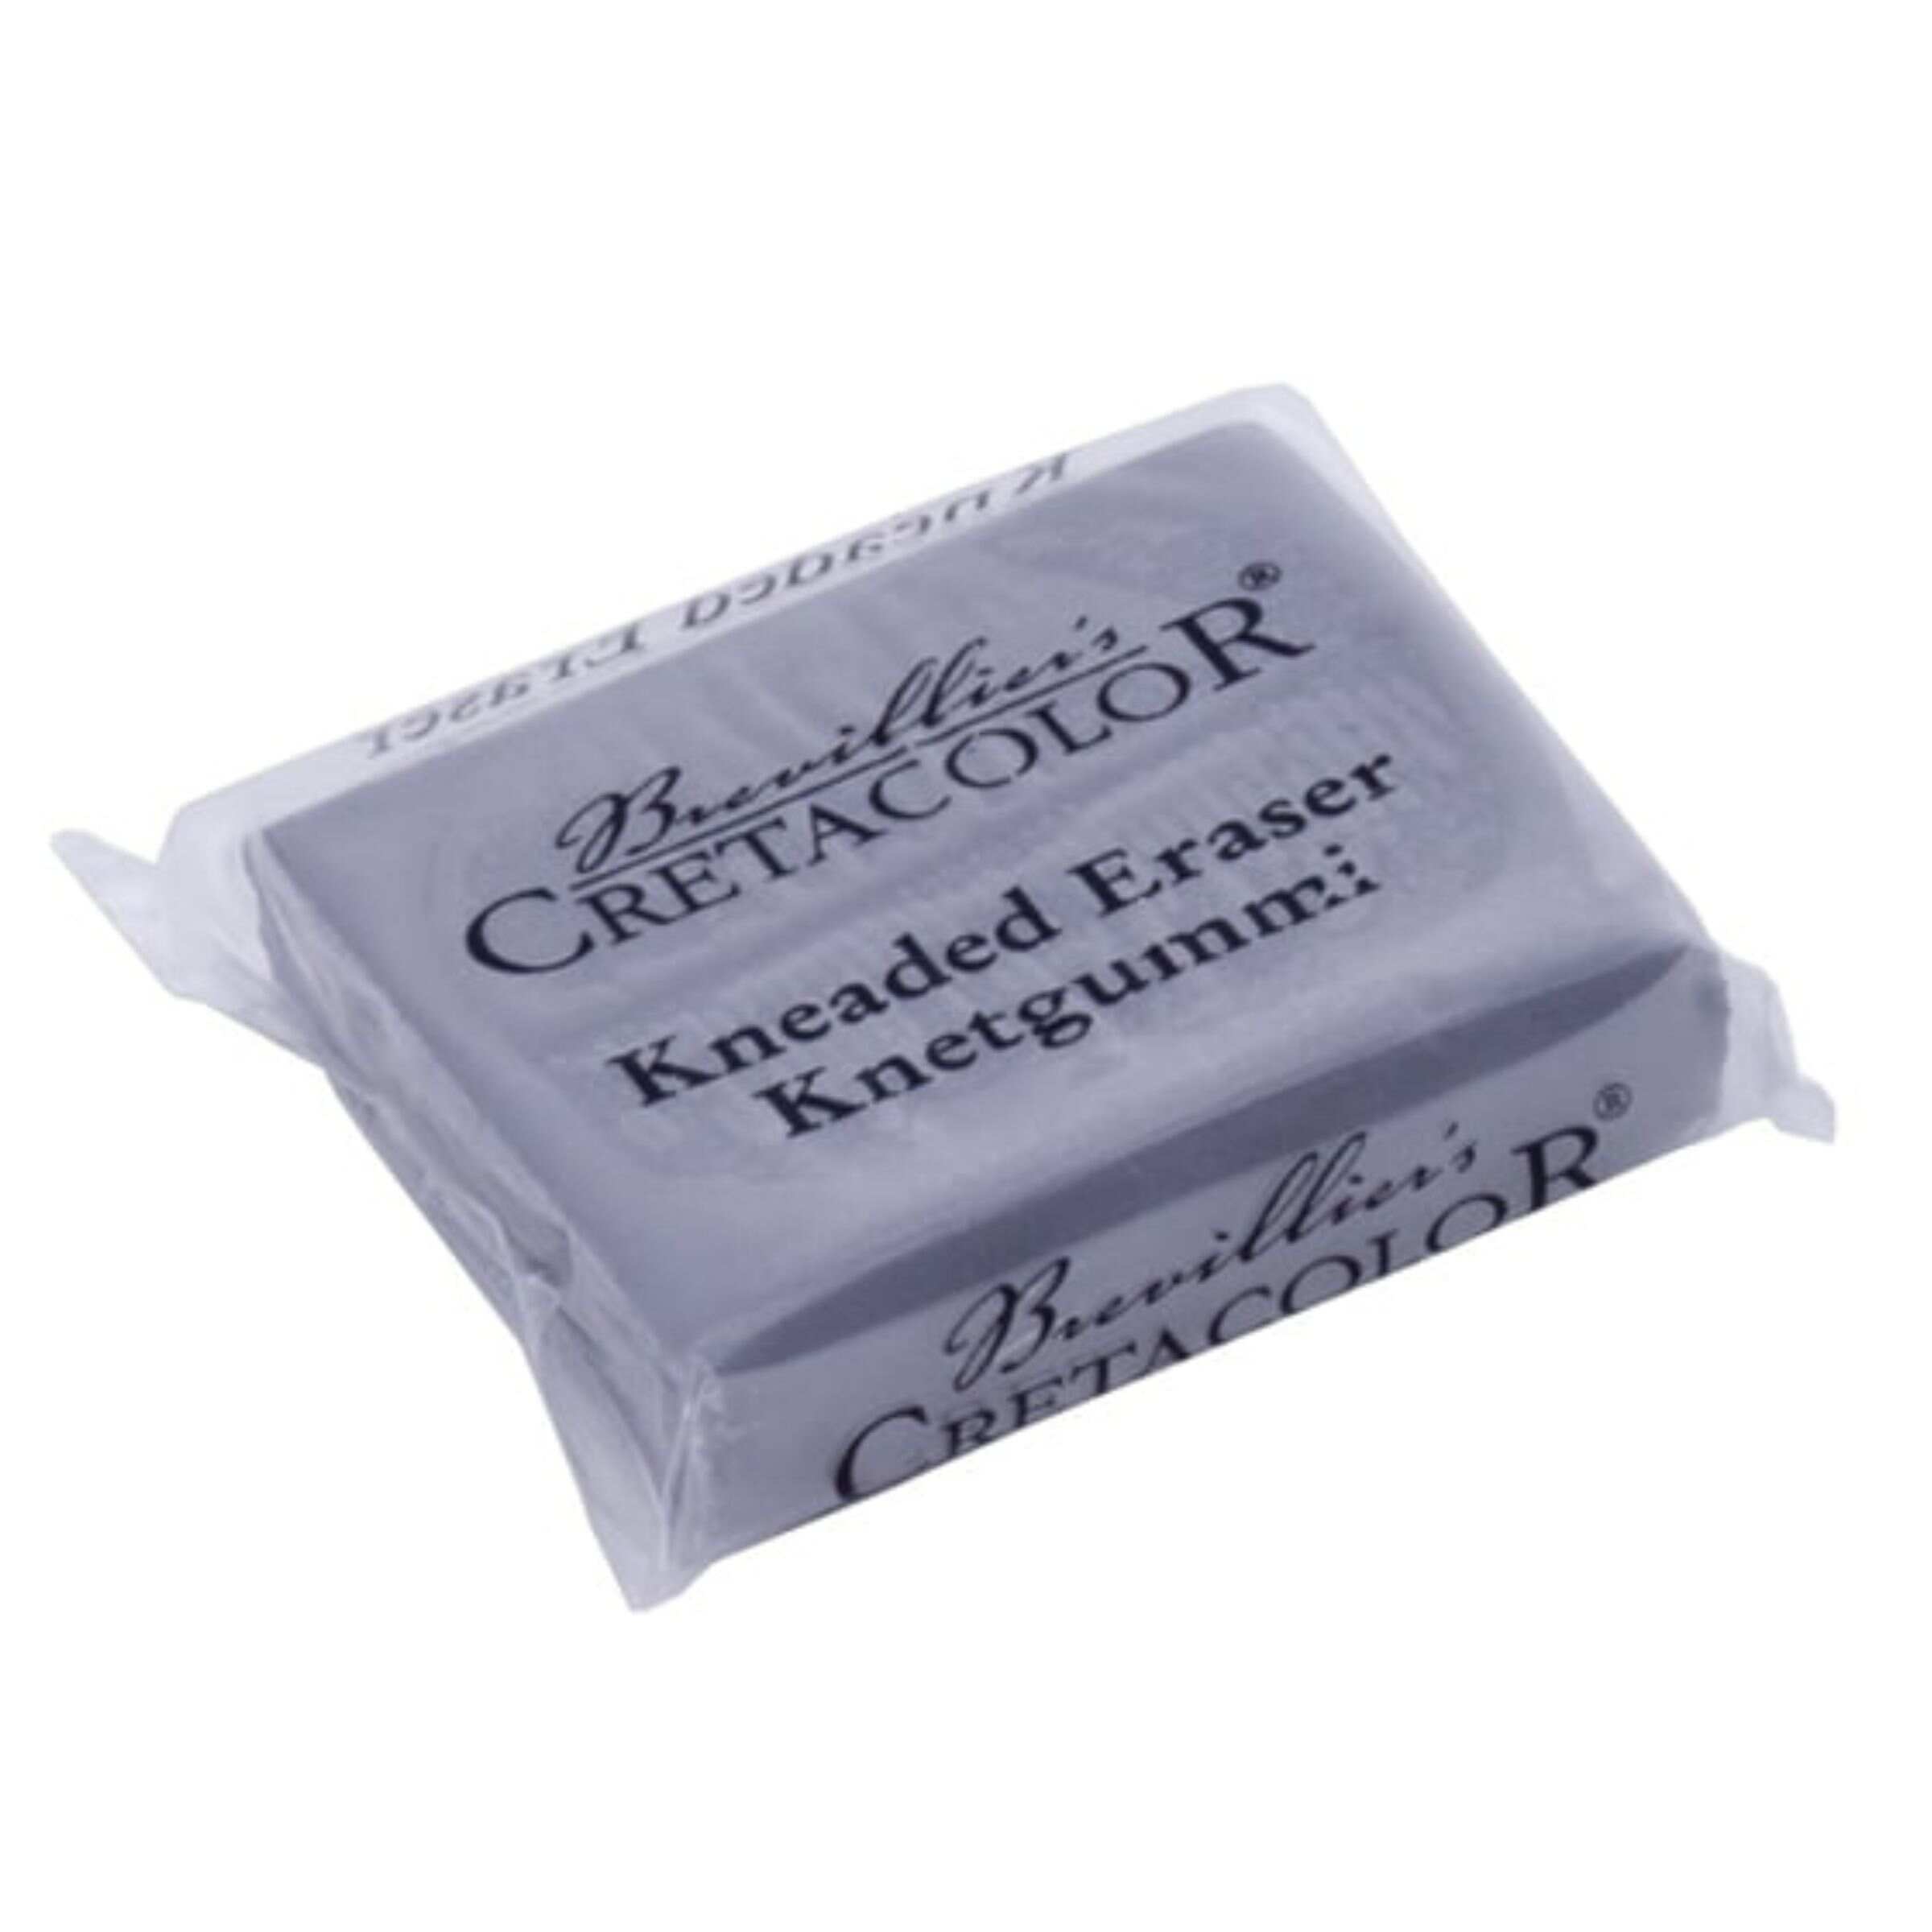 Cretacolor Kneadable Eraser